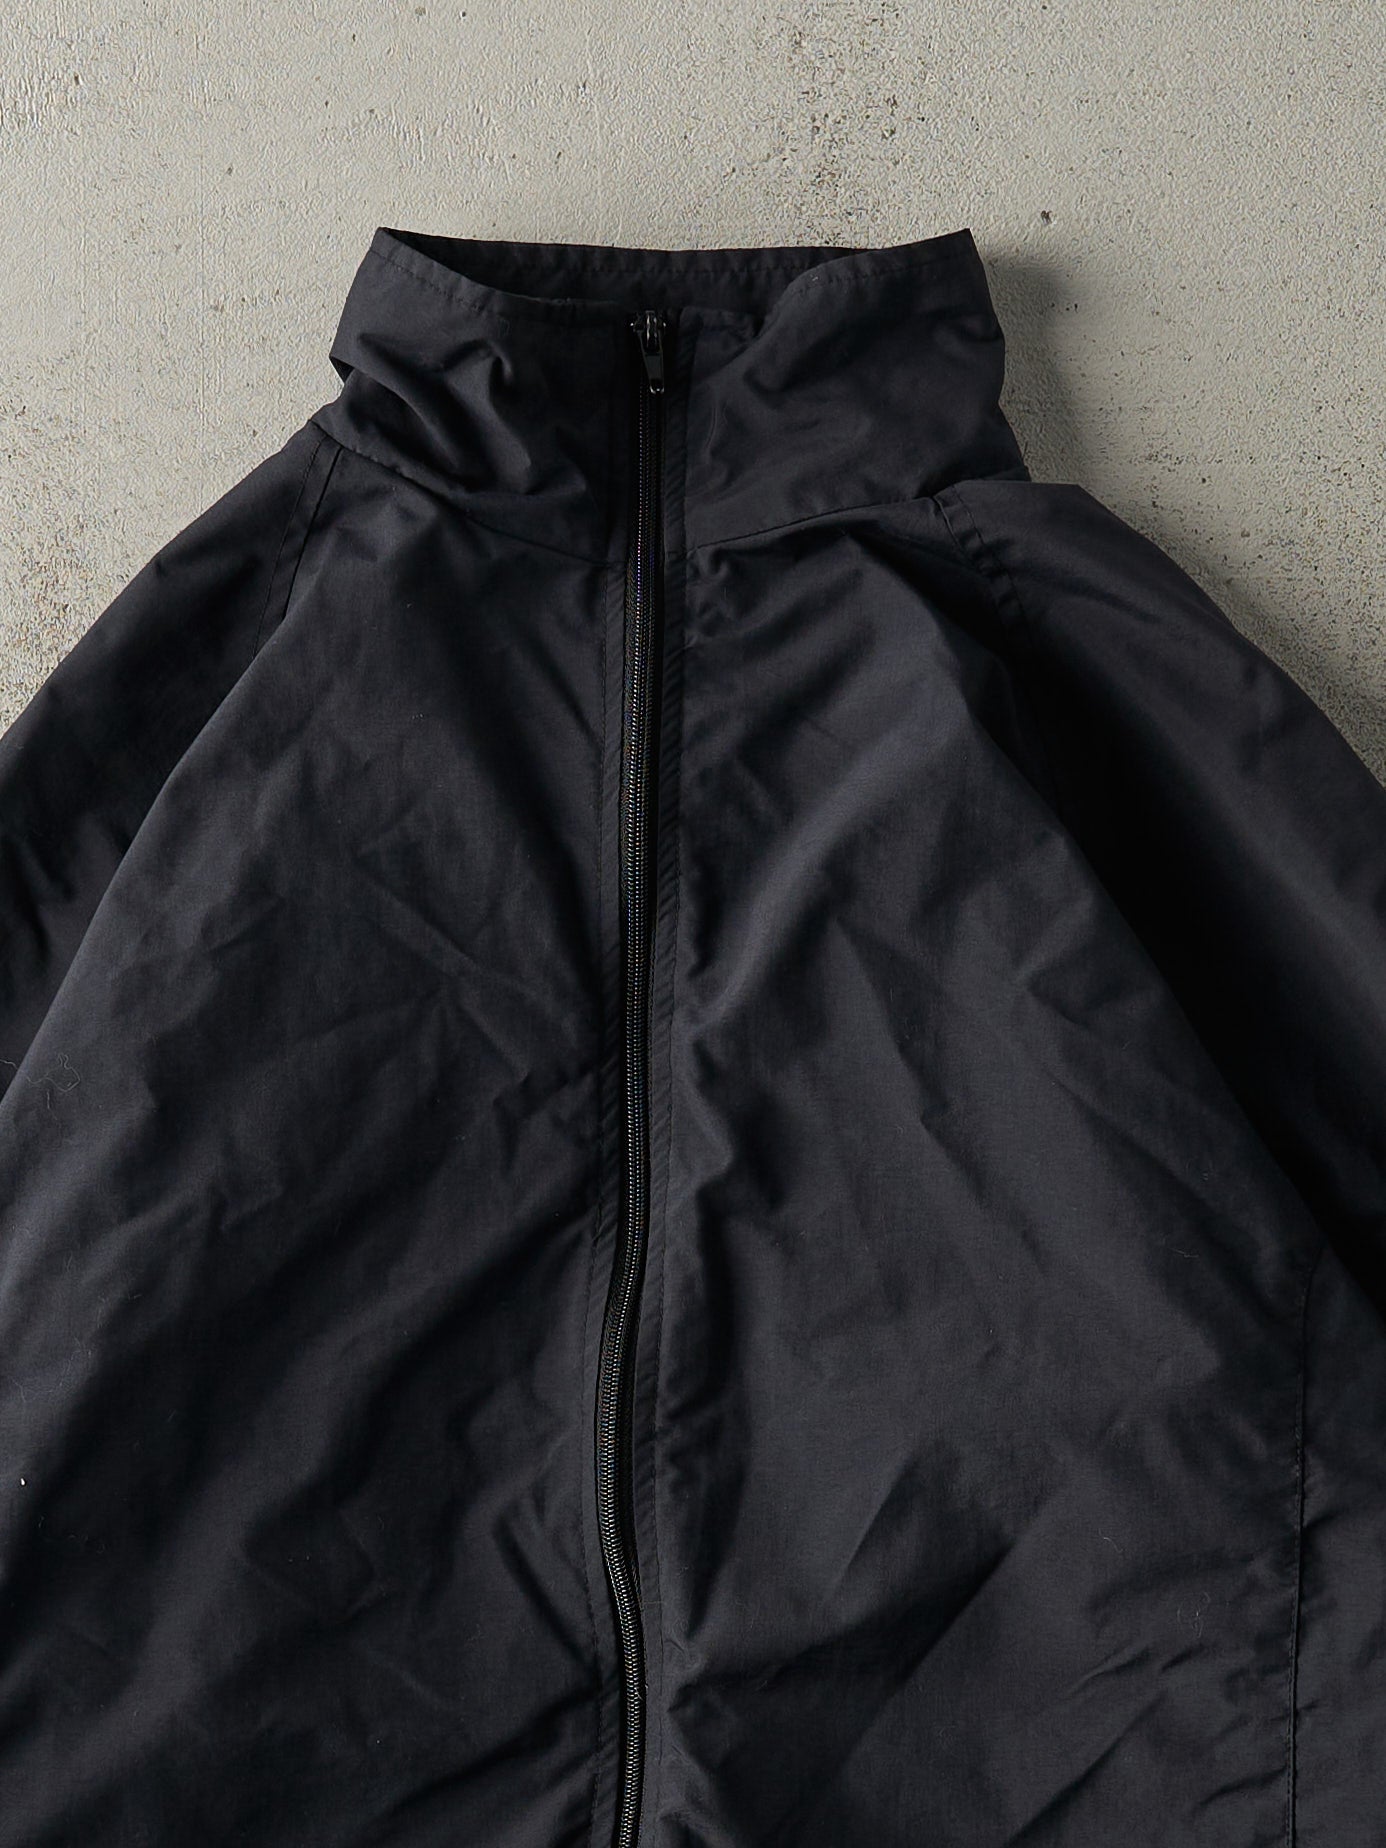 Vintage Y2K Black Russell Athletic Black Zip Up Windbreaker Jacket (L/XL)